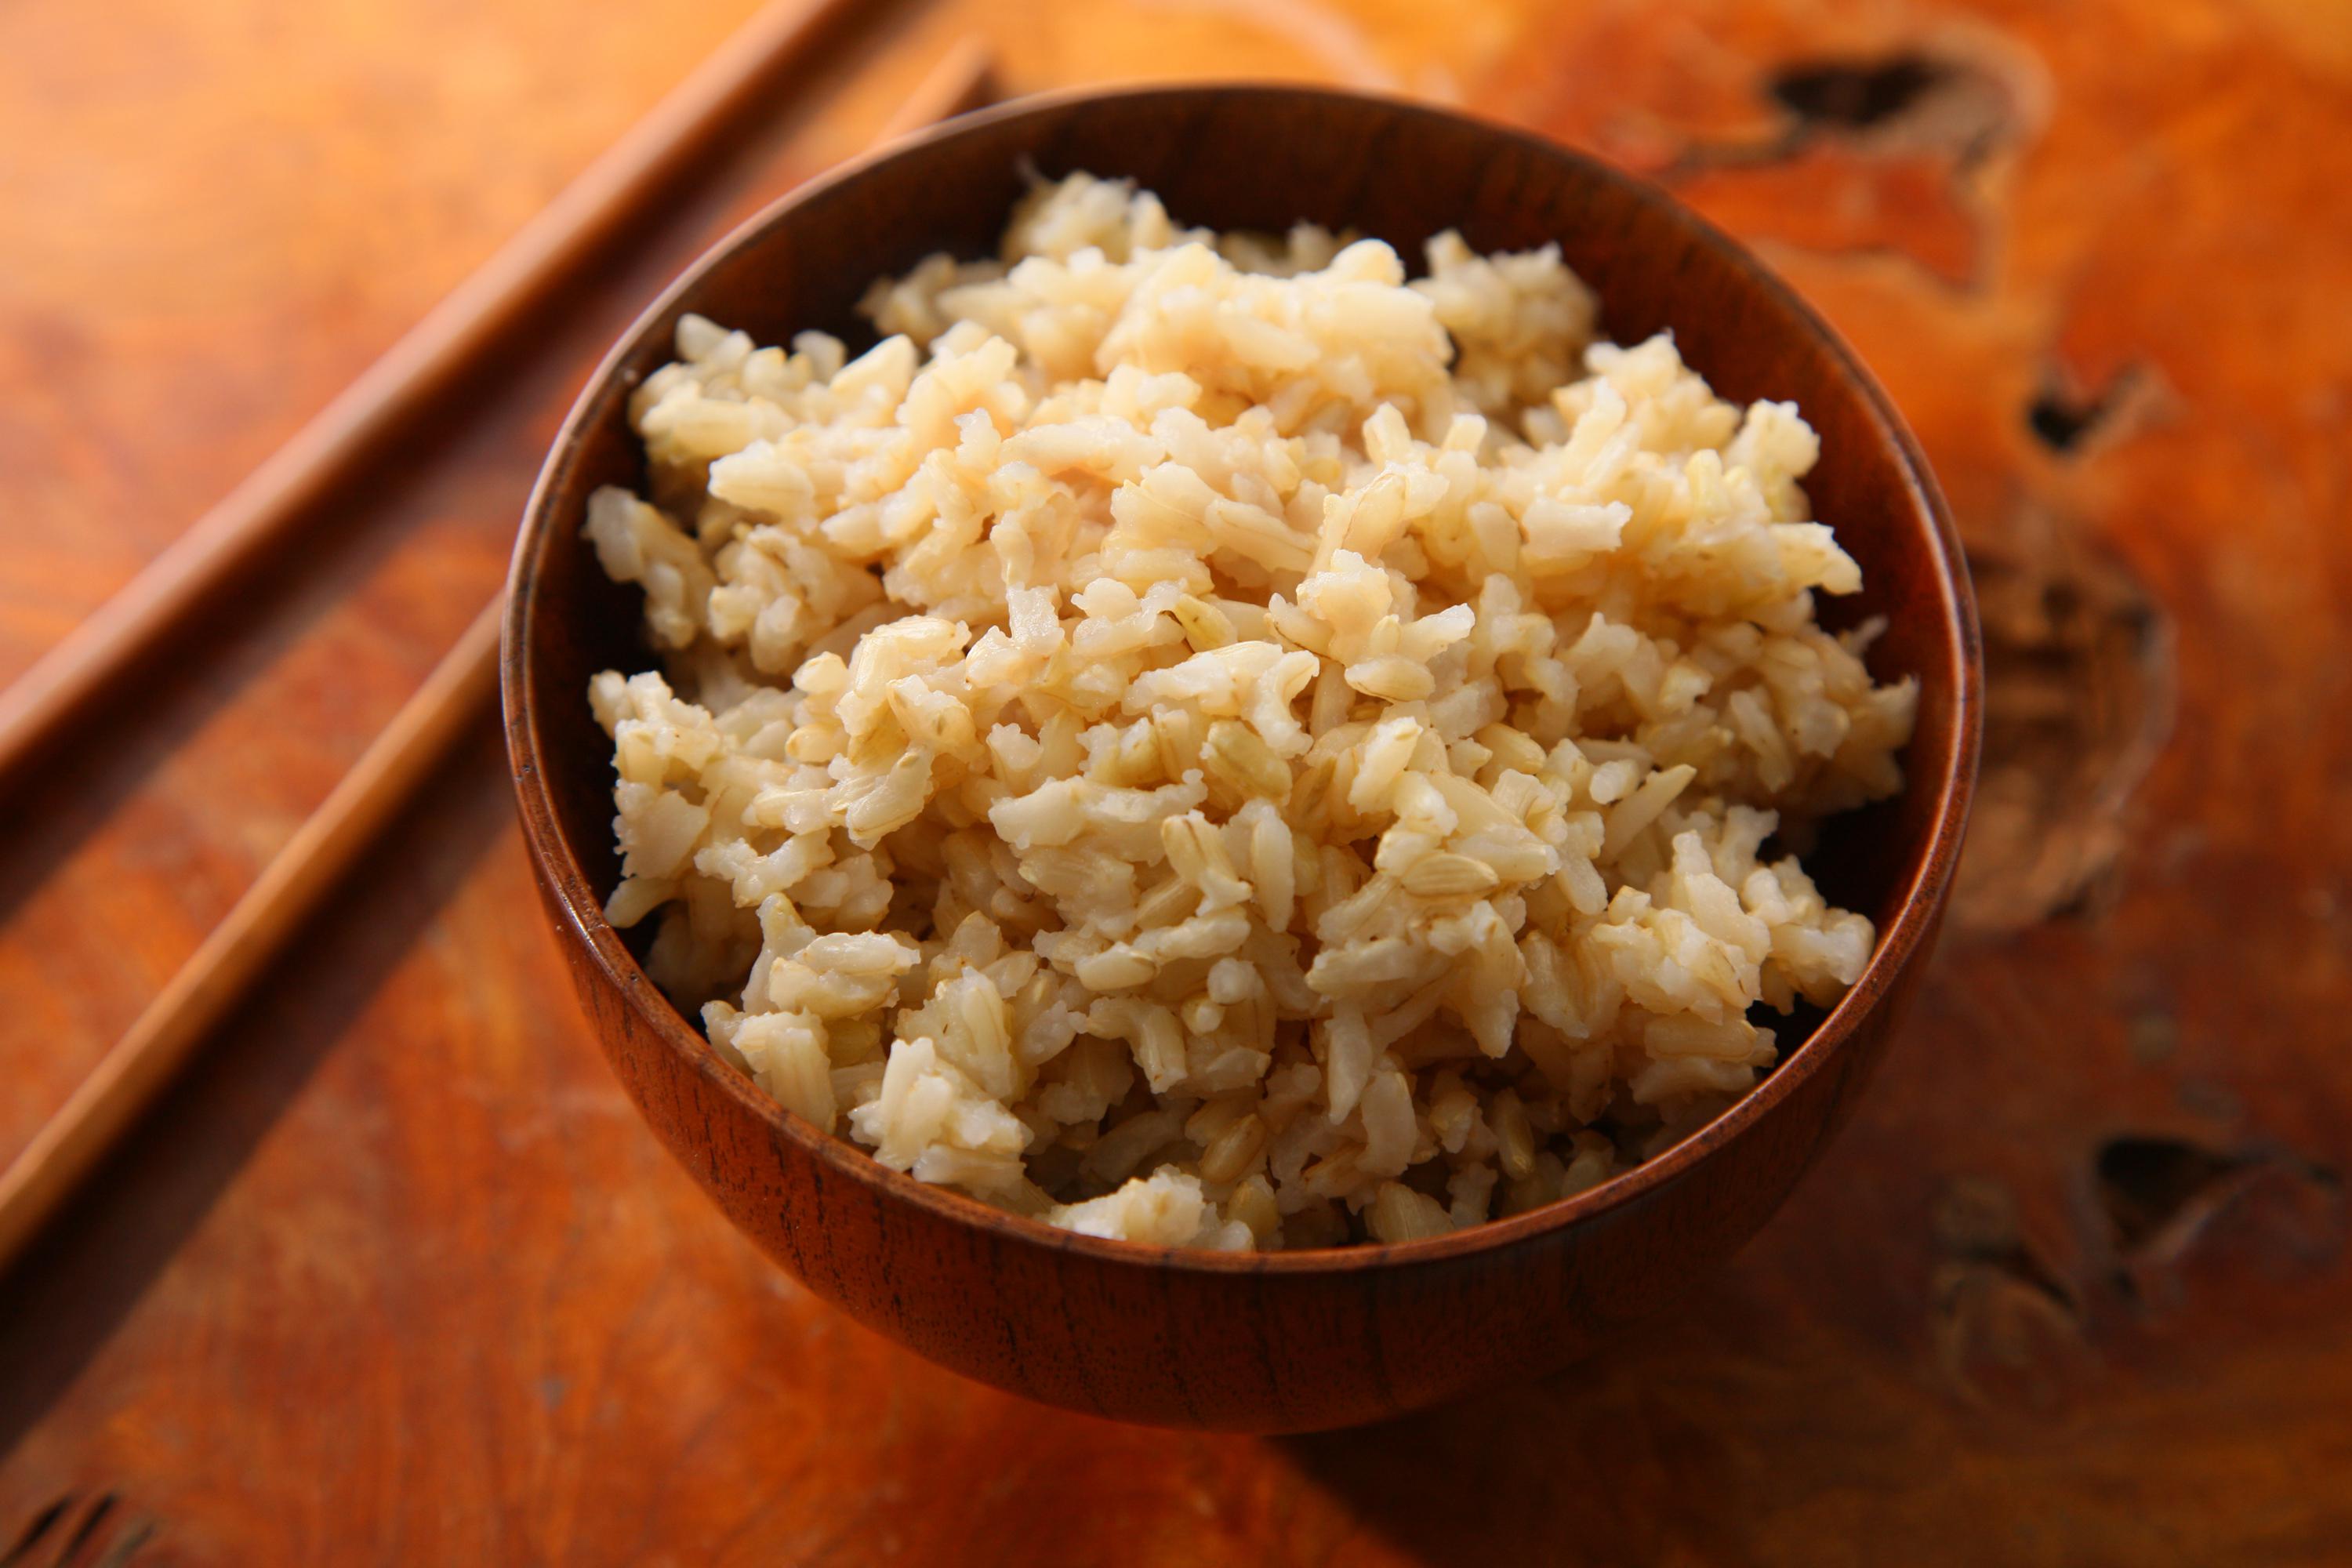 برنج قهوه ای را به سبد غذایی وارد کنید